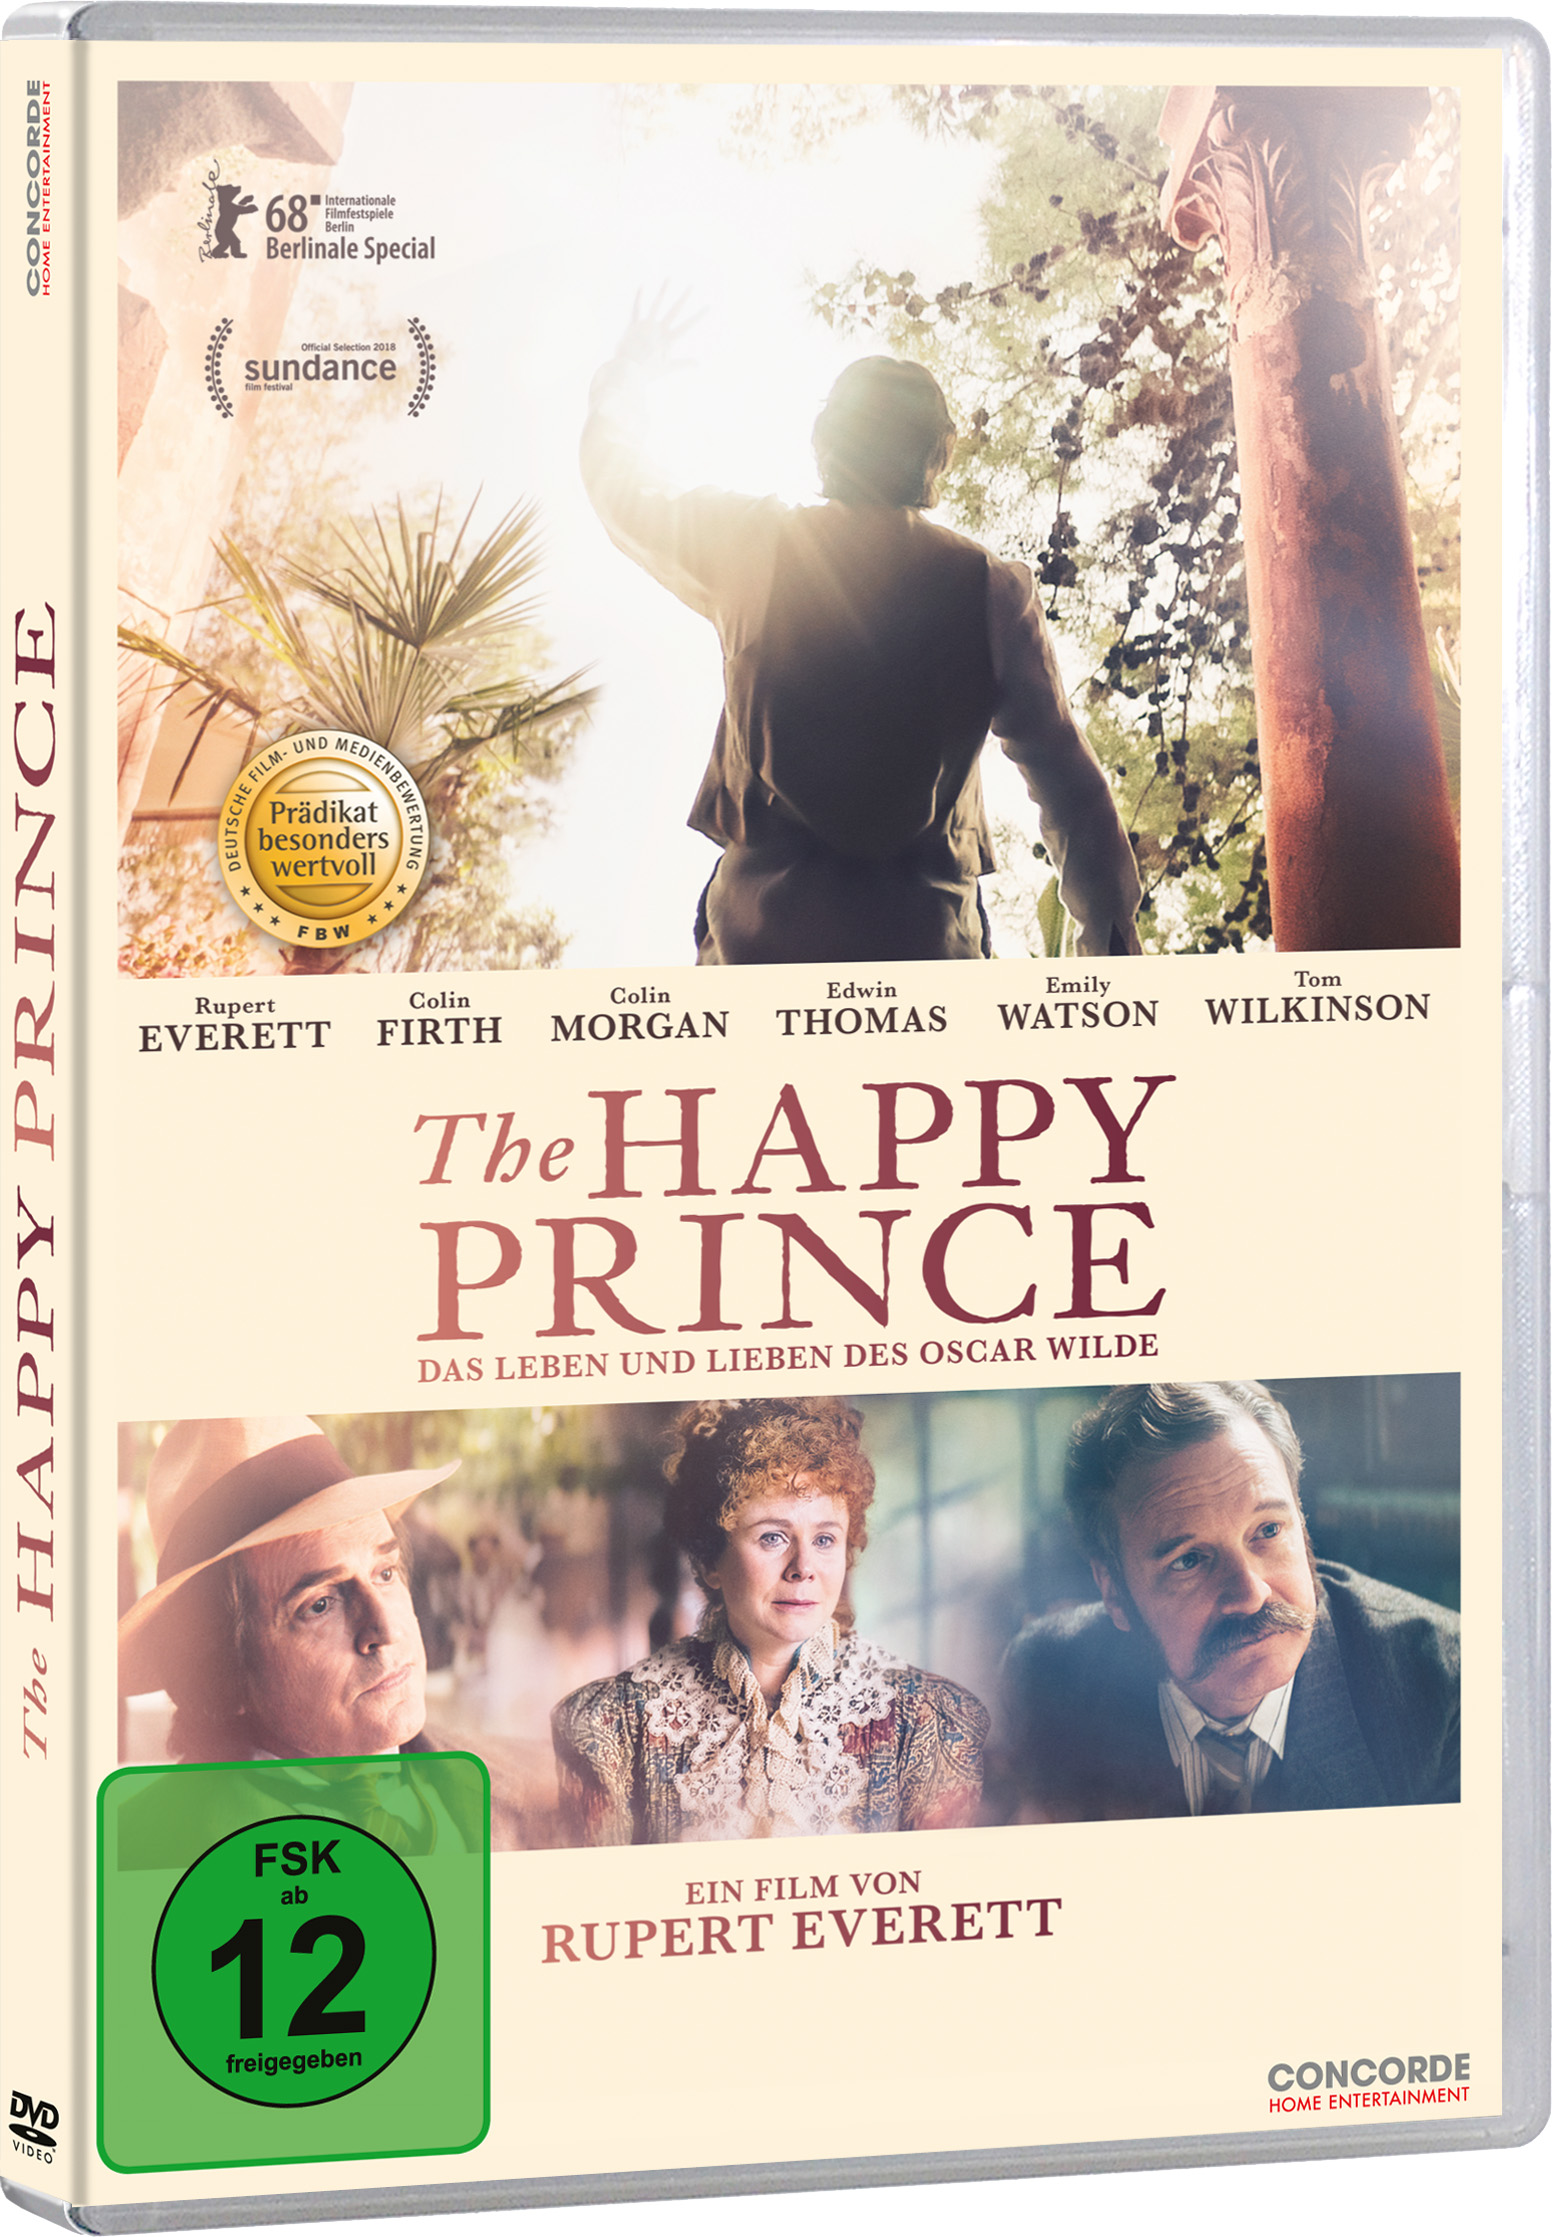 Unser Preisausschreiben zum DVD-Release von „The Happy Prince“